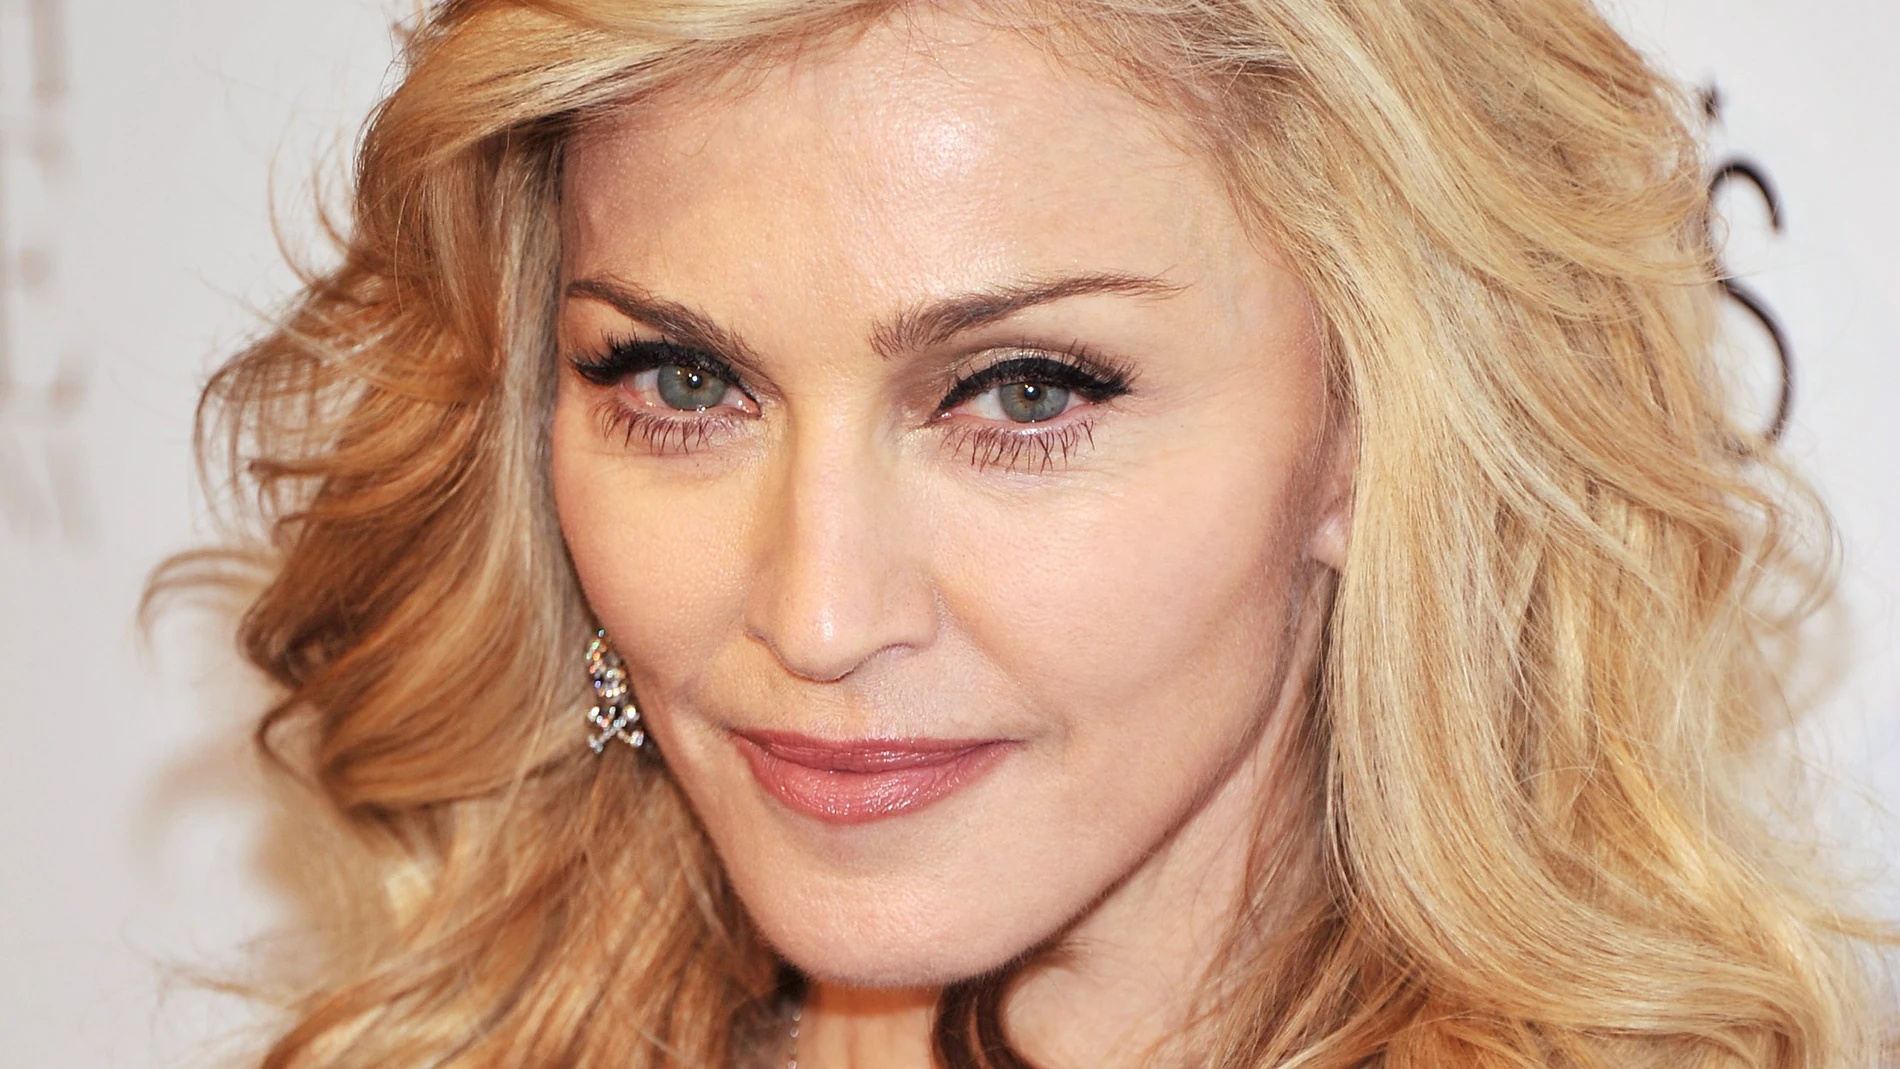 La criticada foto de Madonna recreando la muerte de Marilyn Monroe